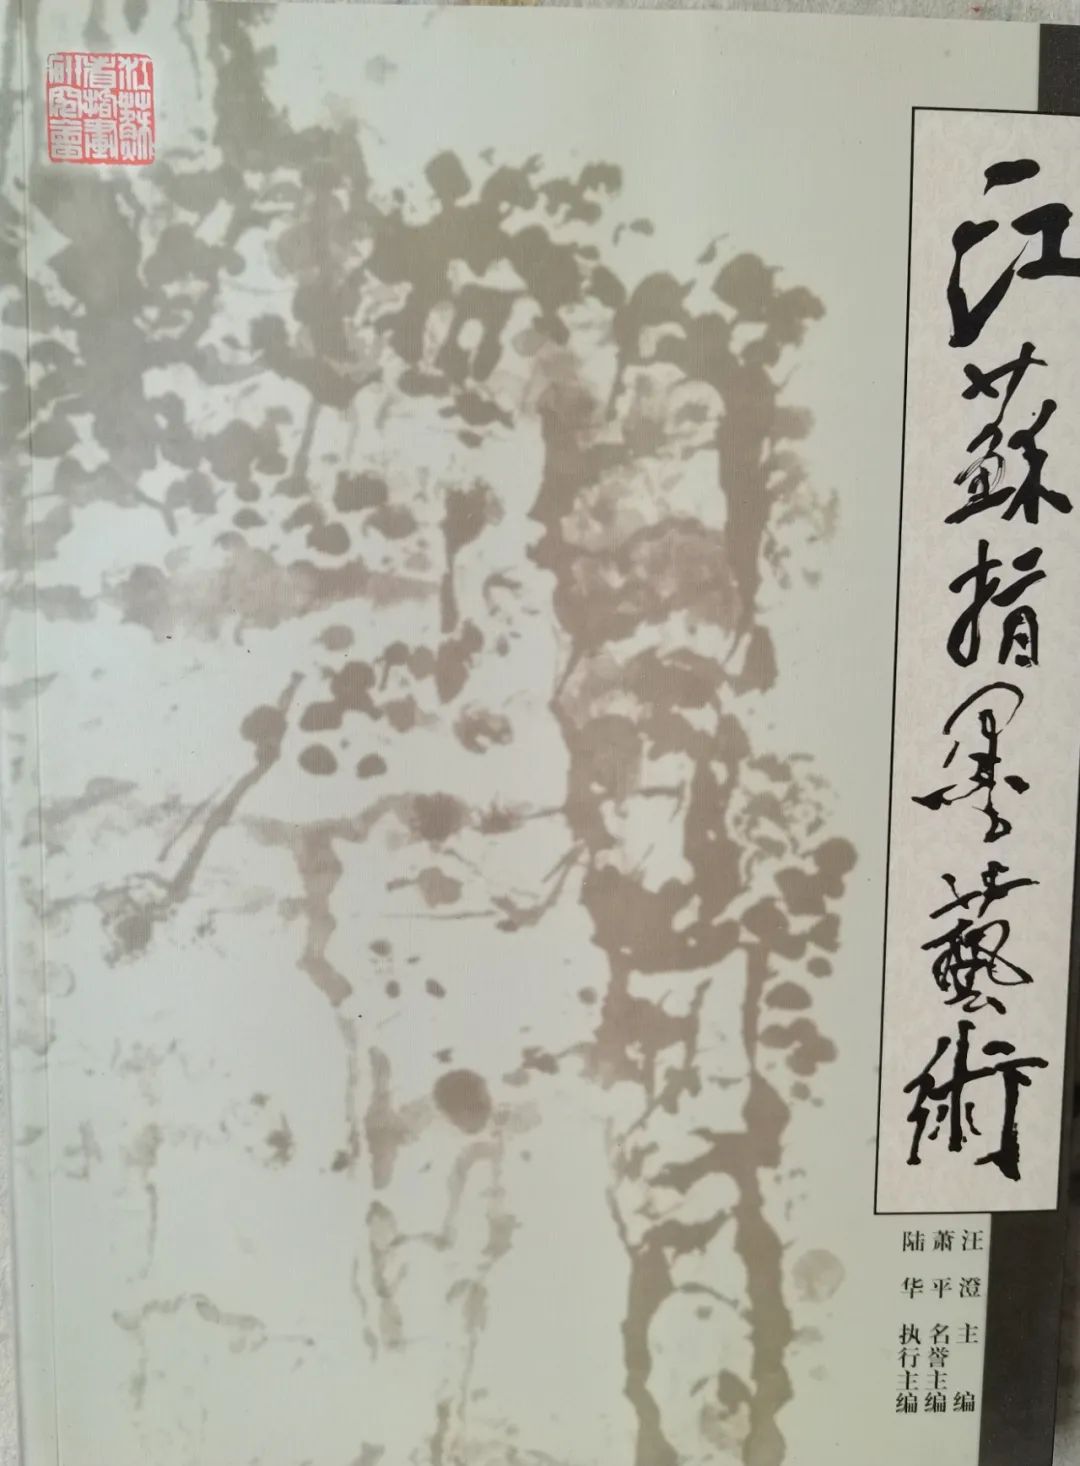 他用几十年画出一个传奇——赵钲的书画